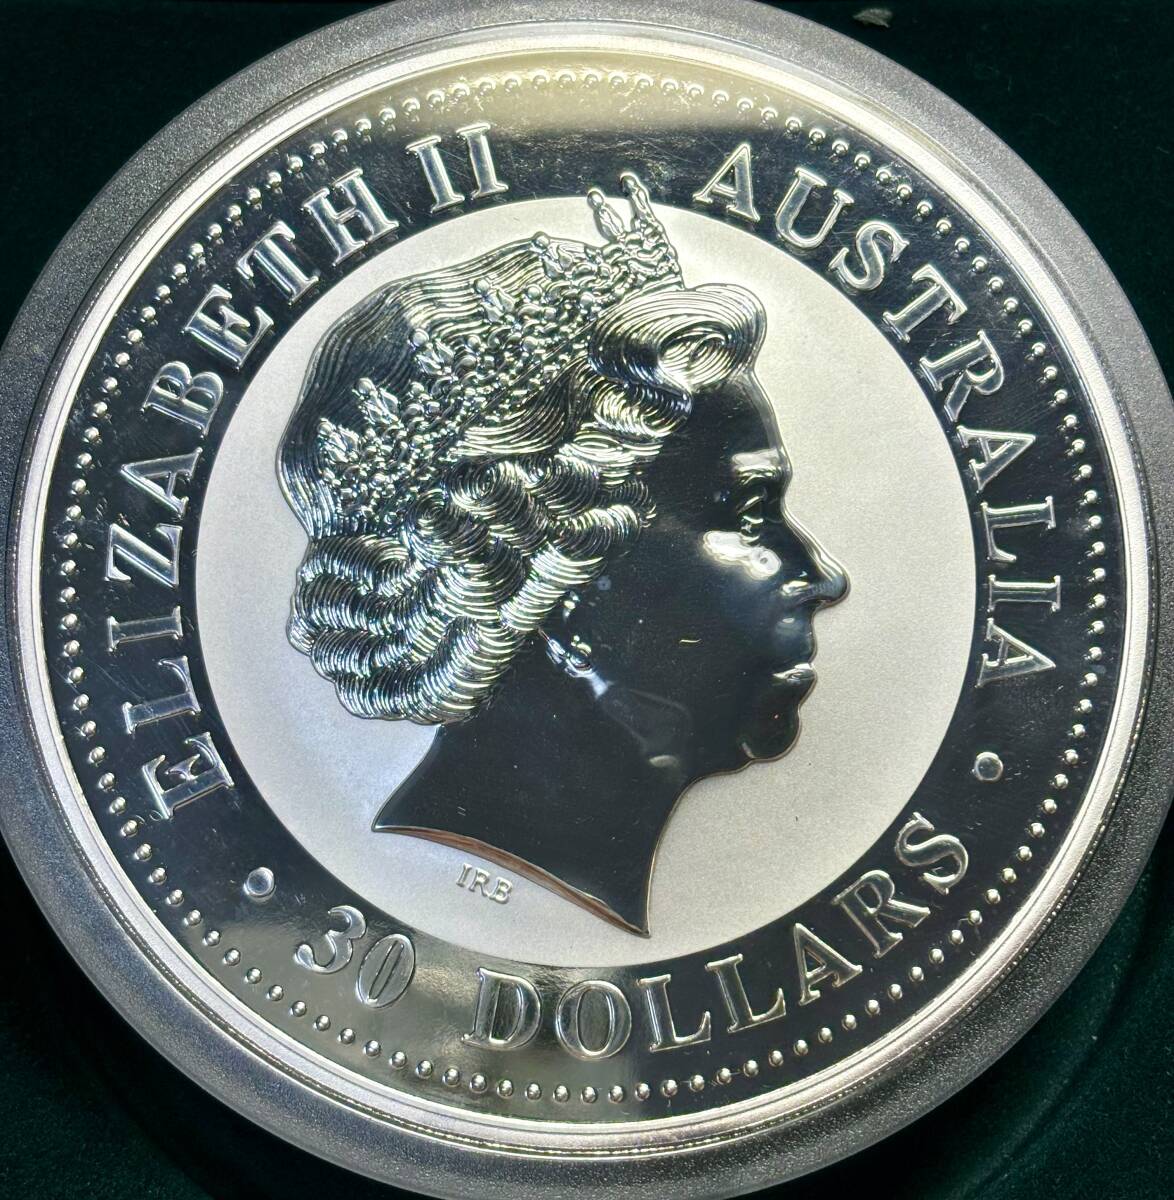 【オーストラリア超大型銀貨】(1kg(キロ)純銀 午年 2002年 直径10cm プルーフ)_画像3